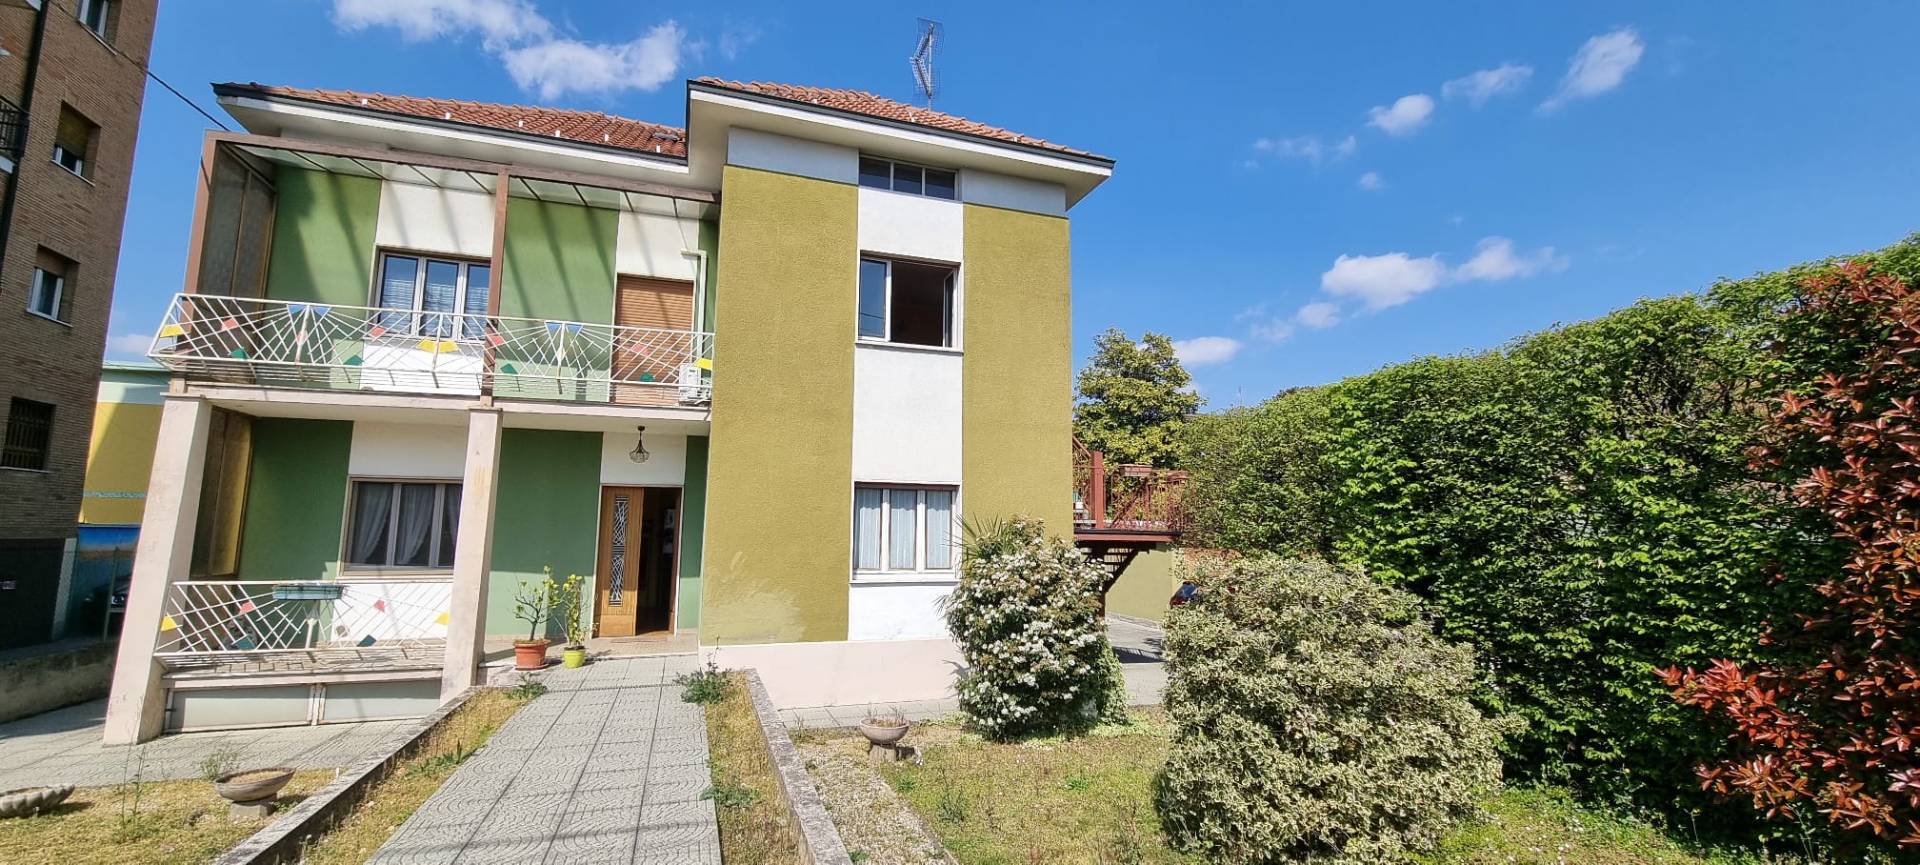 Villa in vendita a Capriate San Gervasio, 6 locali, prezzo € 270.000 | PortaleAgenzieImmobiliari.it